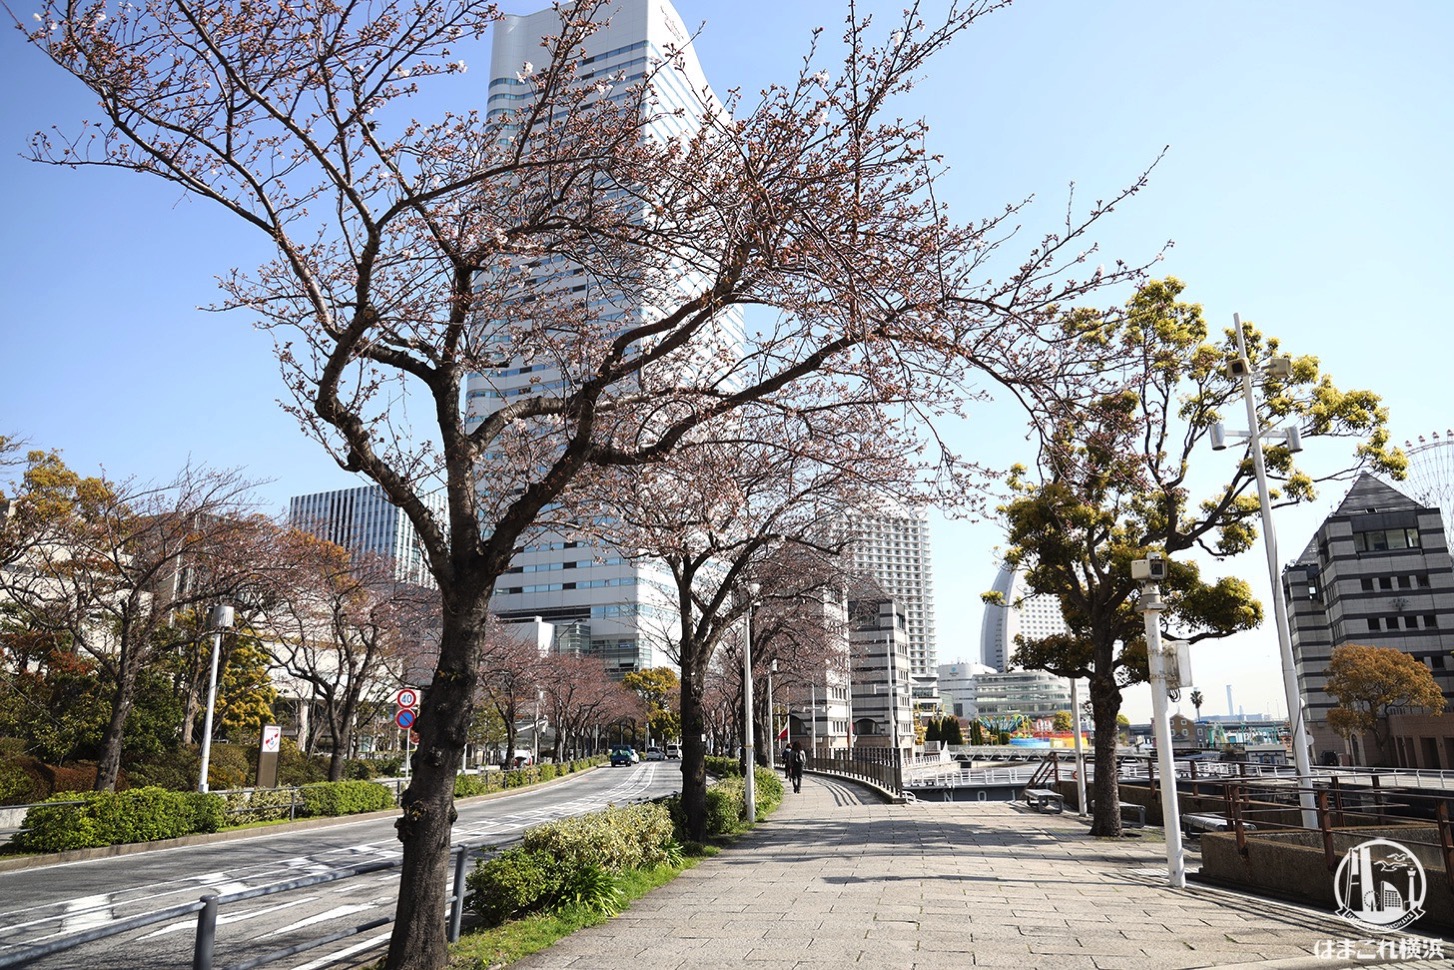 横浜みなとみらいの桜開花状況（2020年3月26日）さくら通り・汽車道・万葉倶楽部前